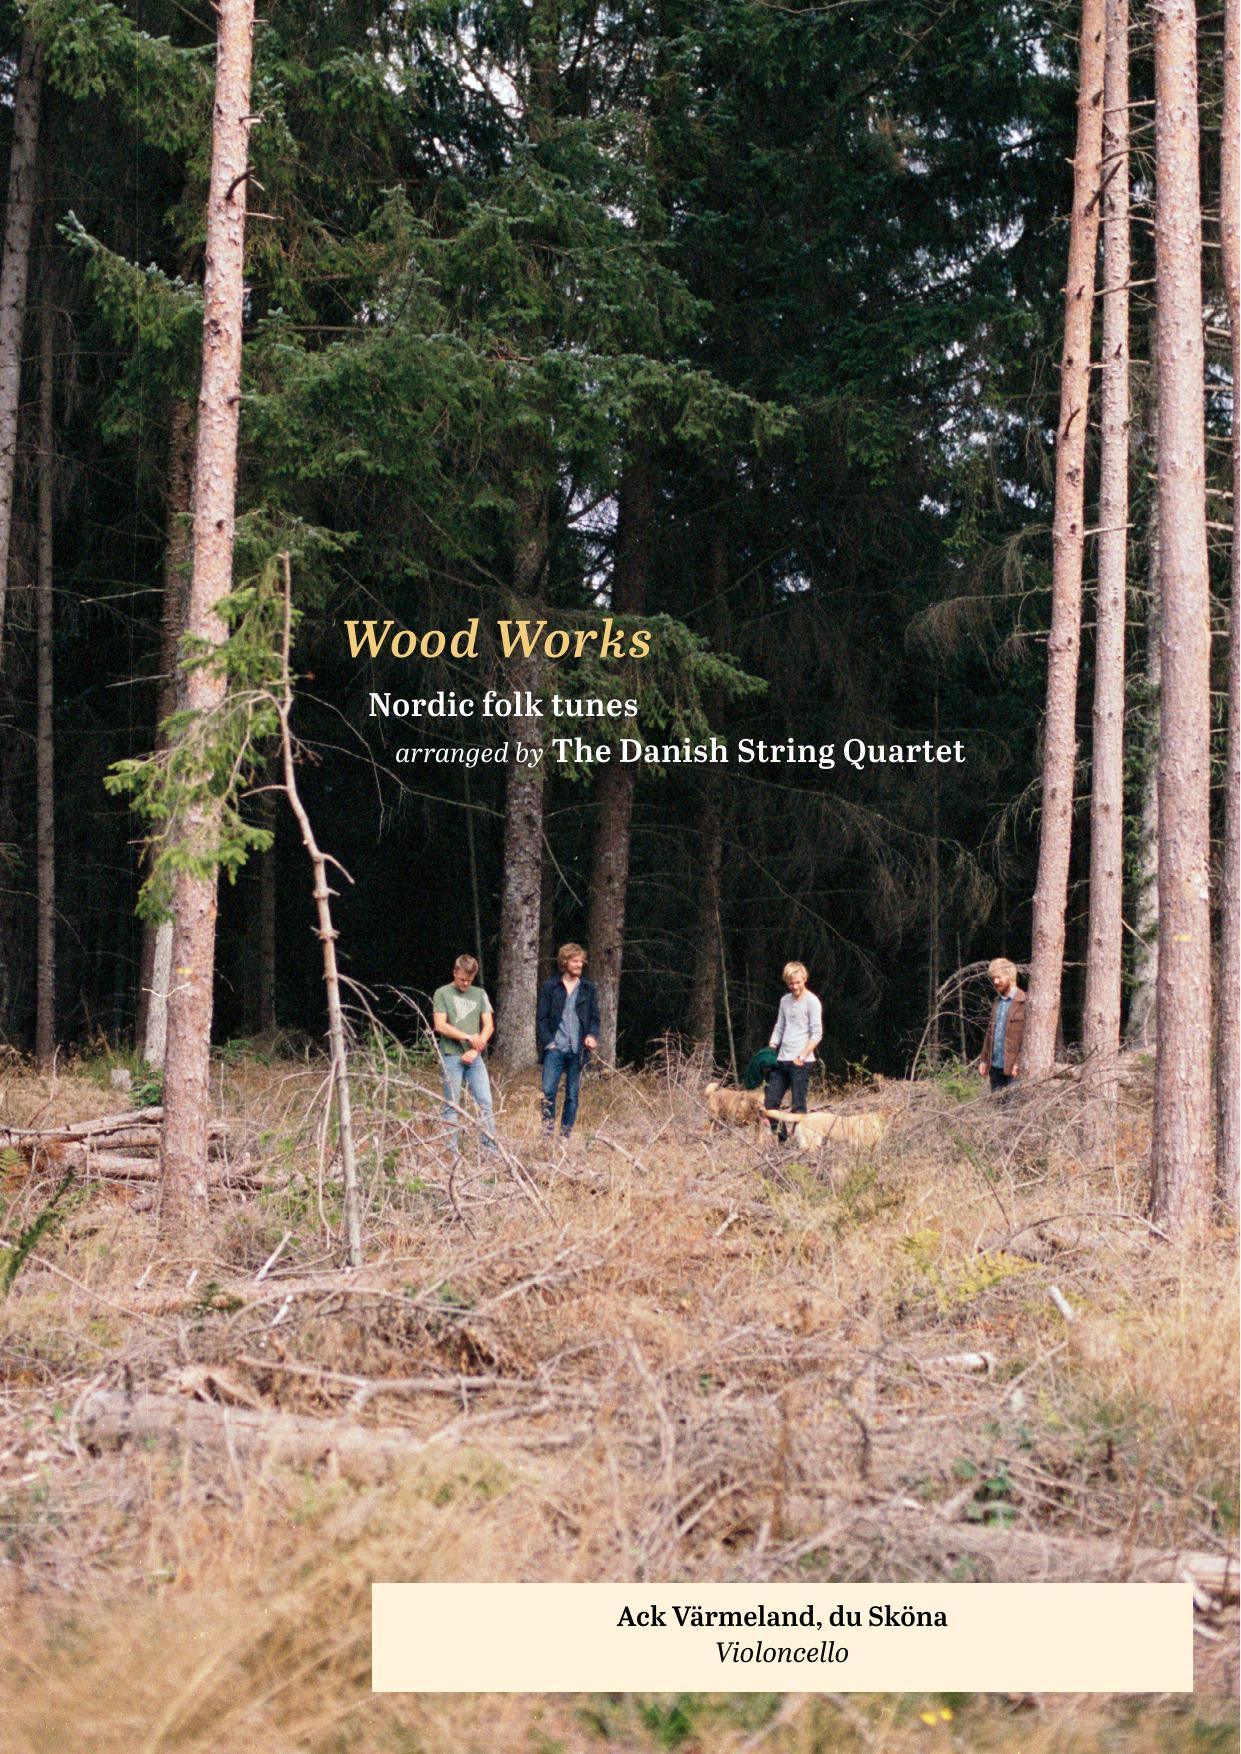 Wood Works – Ack Värmeland, du Sköna